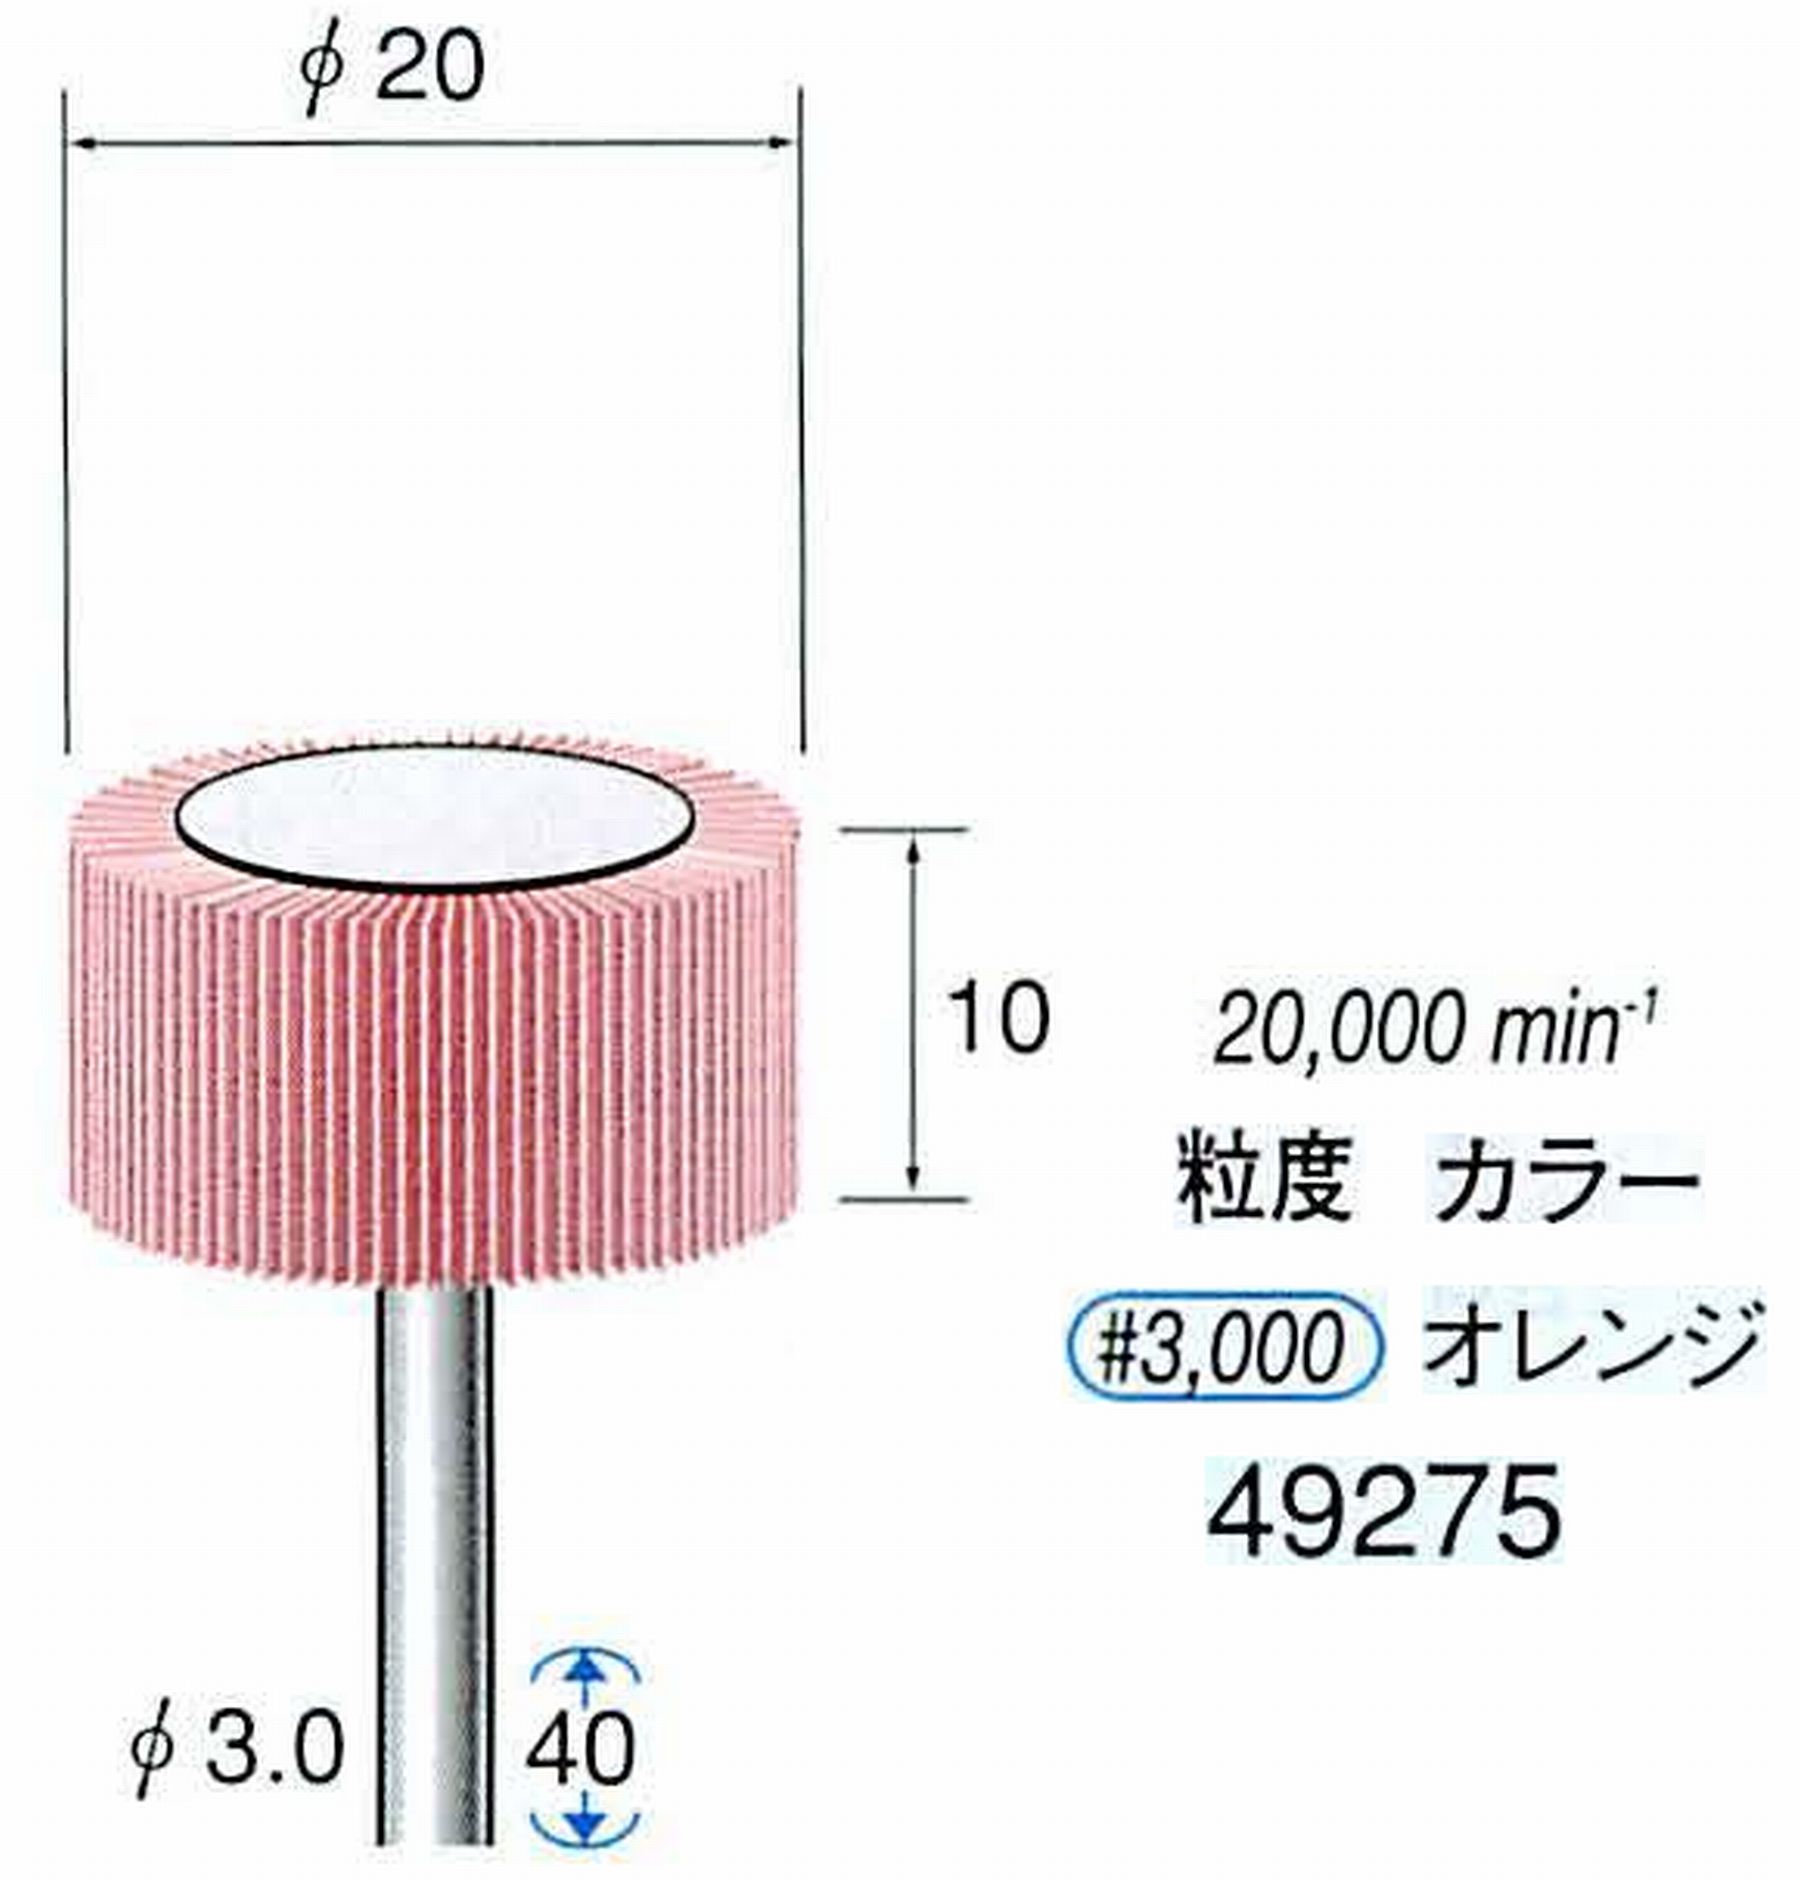 ナカニシ/NAKANISHI ファイン フラップサンダー 軸径(シャンク)φ3.0mm 49275